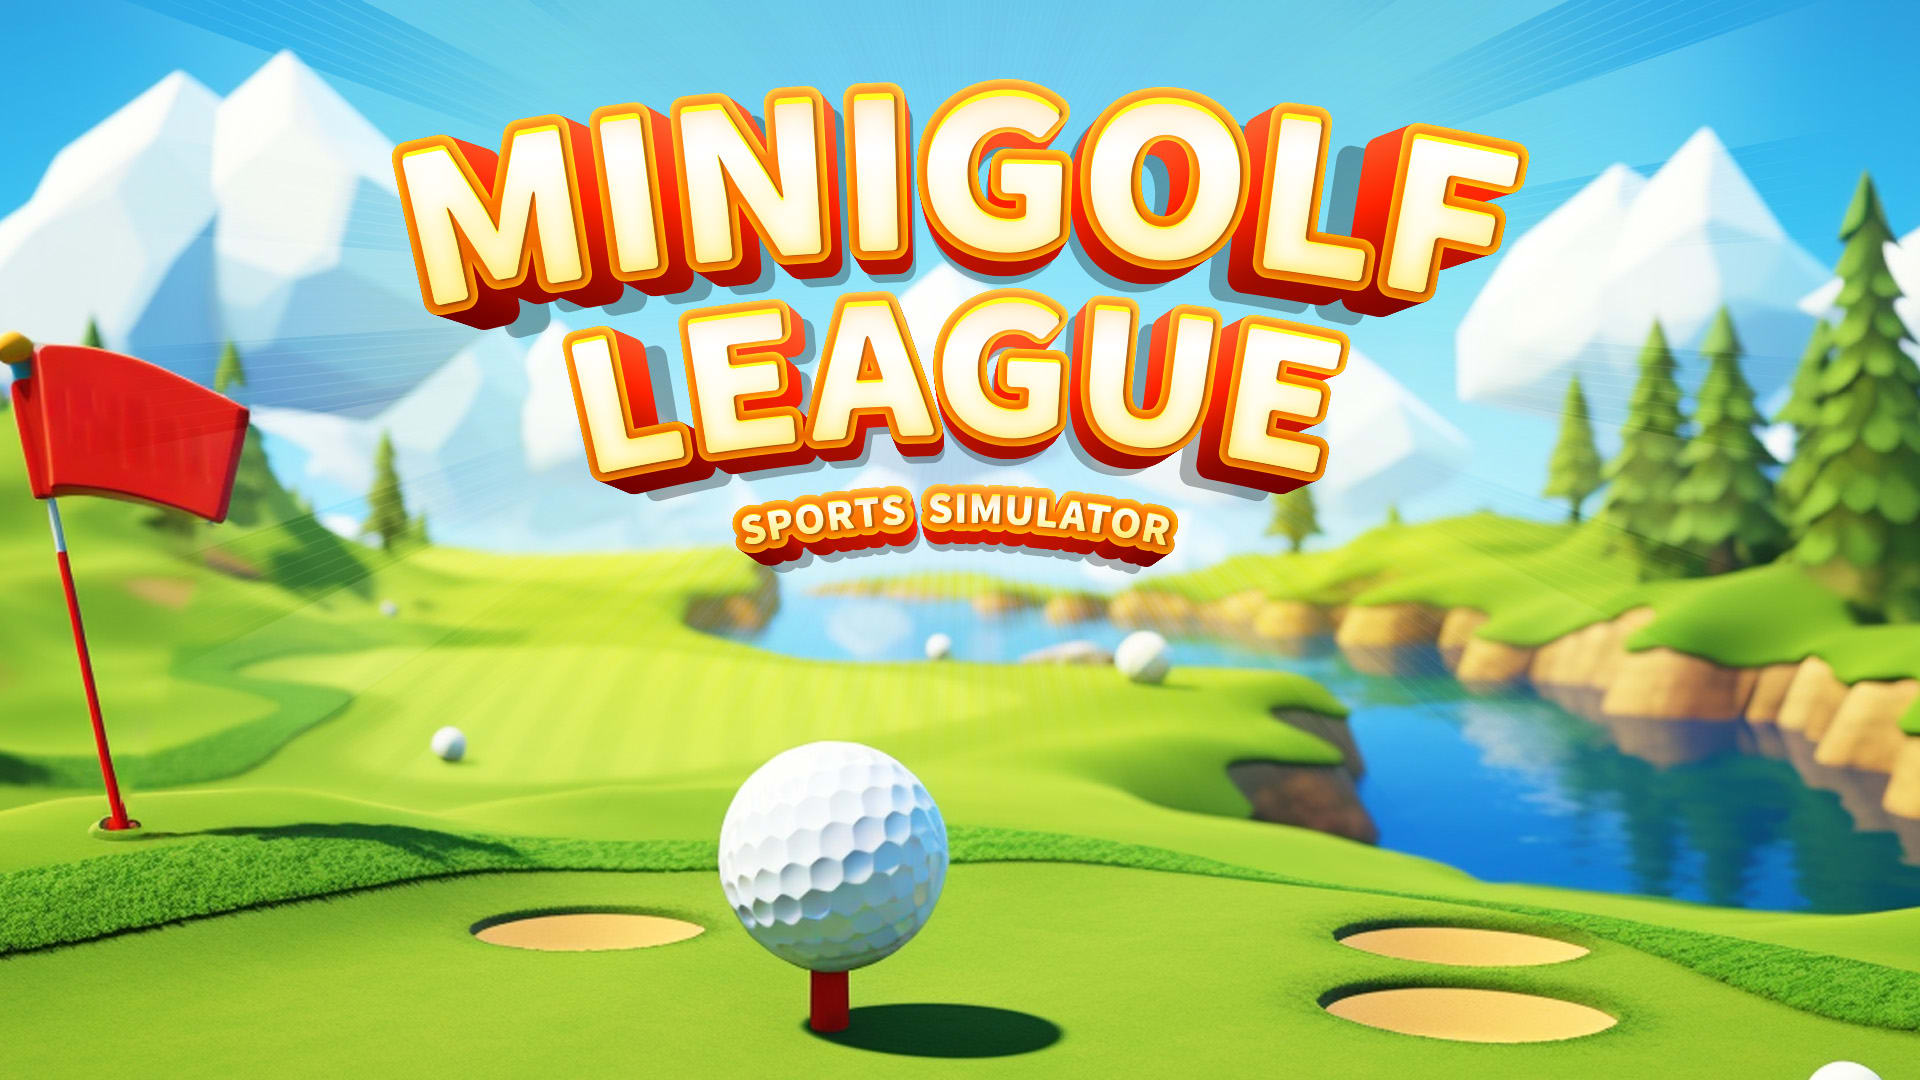 Mini Golf League: Sports Simulator